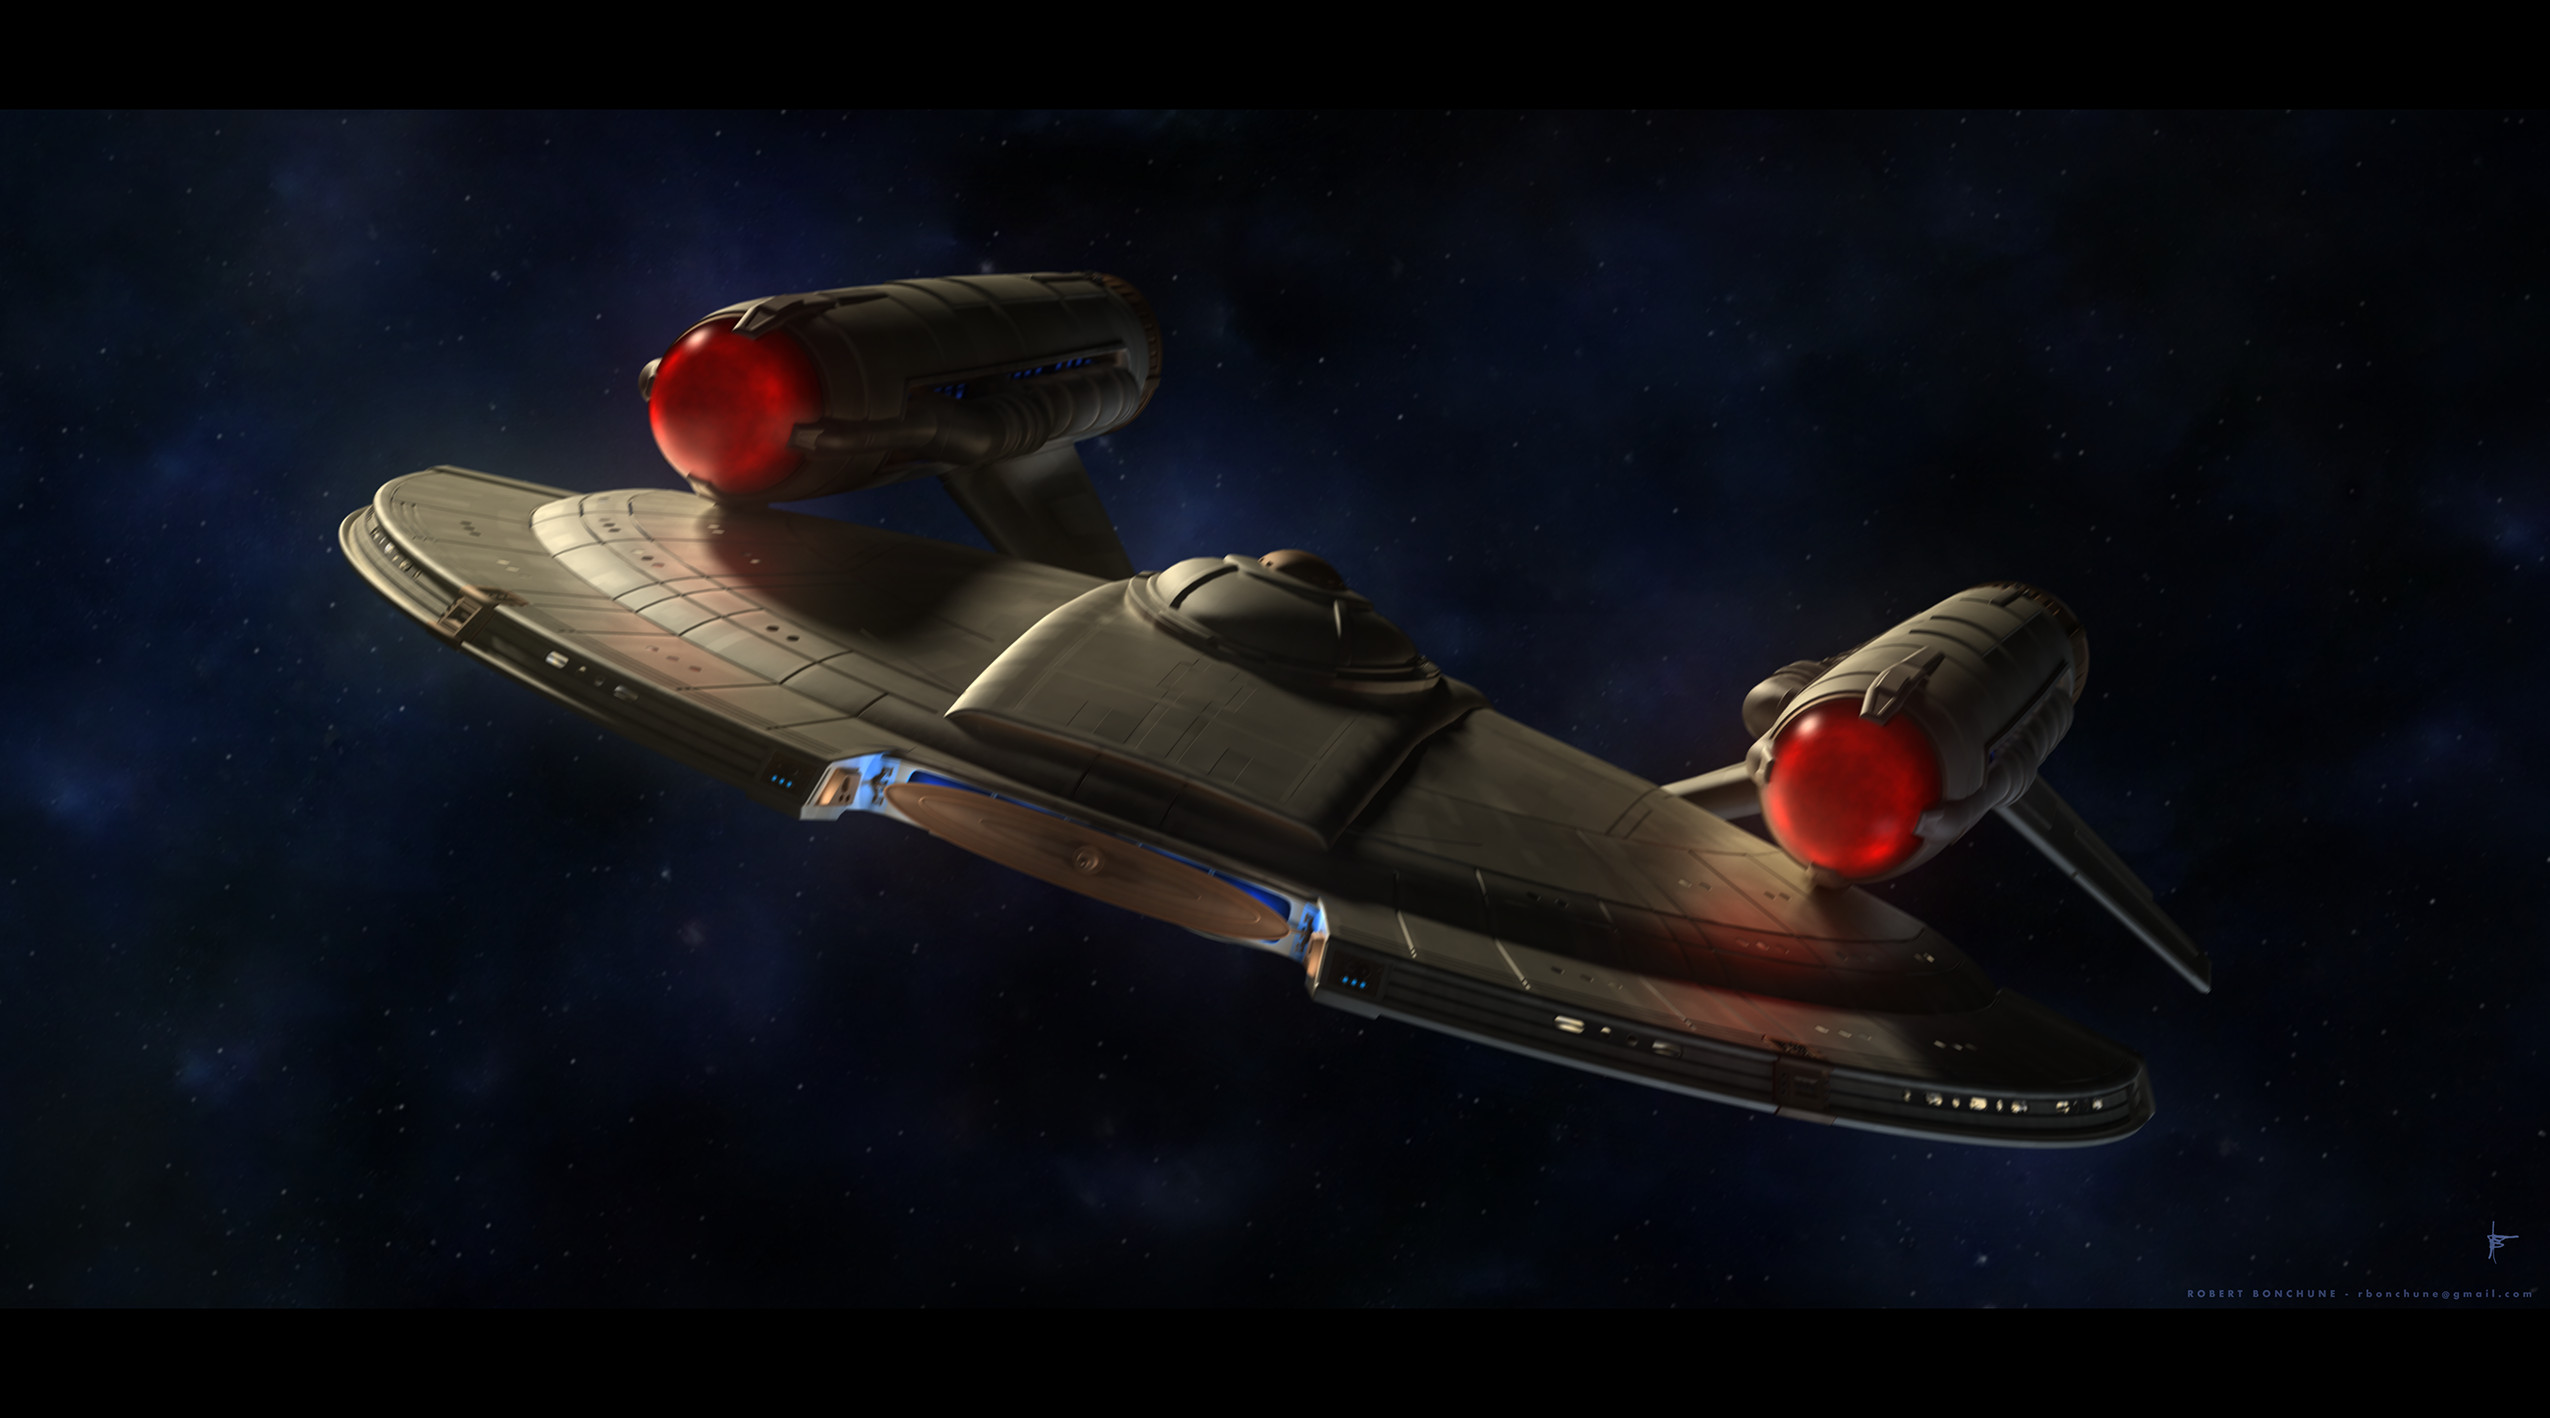 General 2550x1418 Star Trek spaceship vehicle TV series